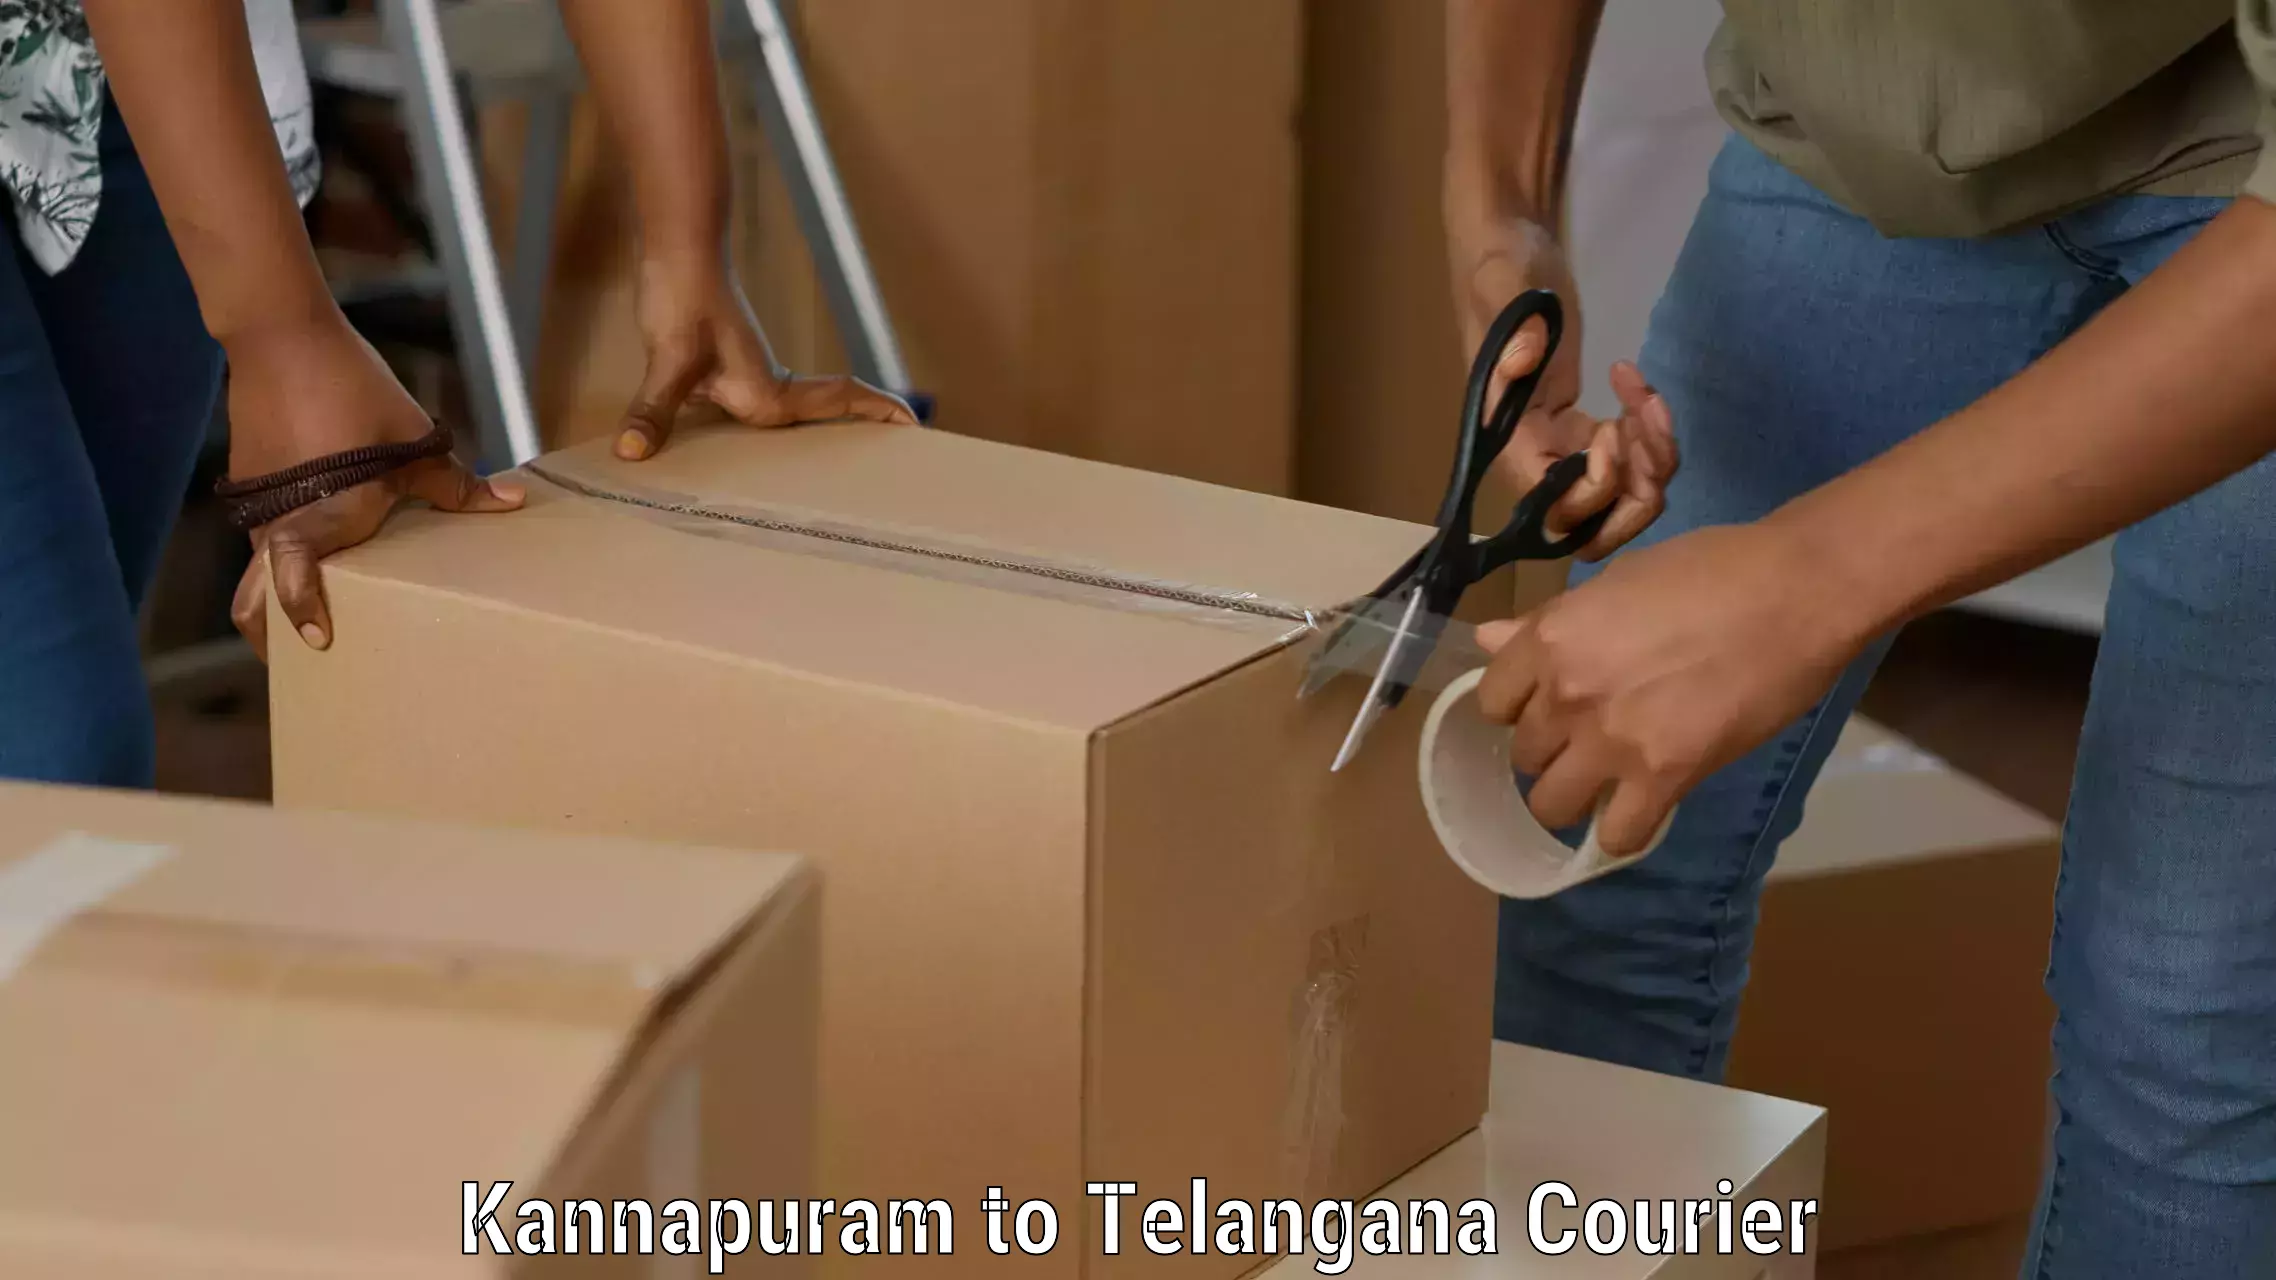 Express logistics service Kannapuram to Telangana